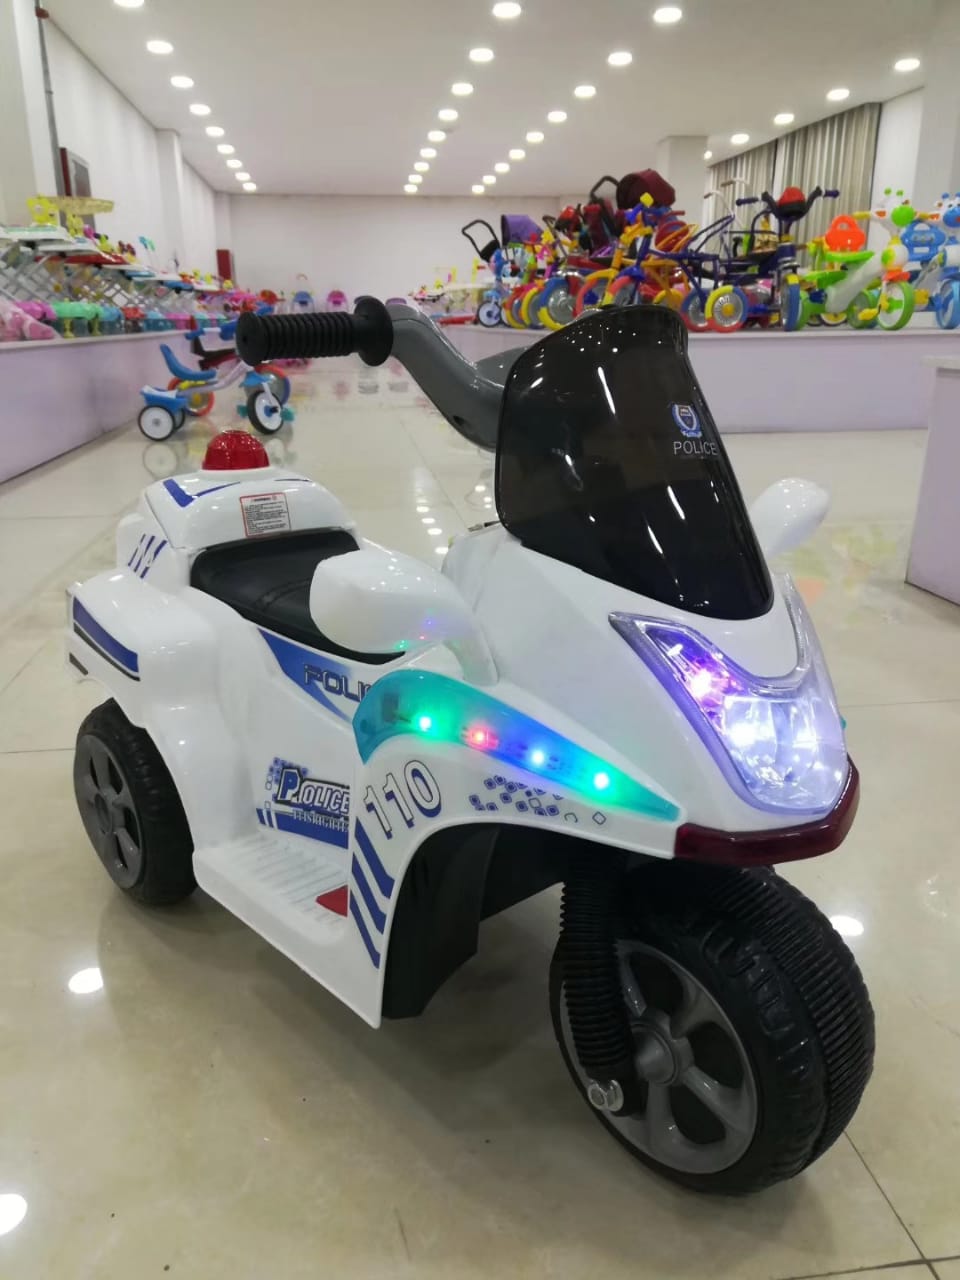 Police bike for kids